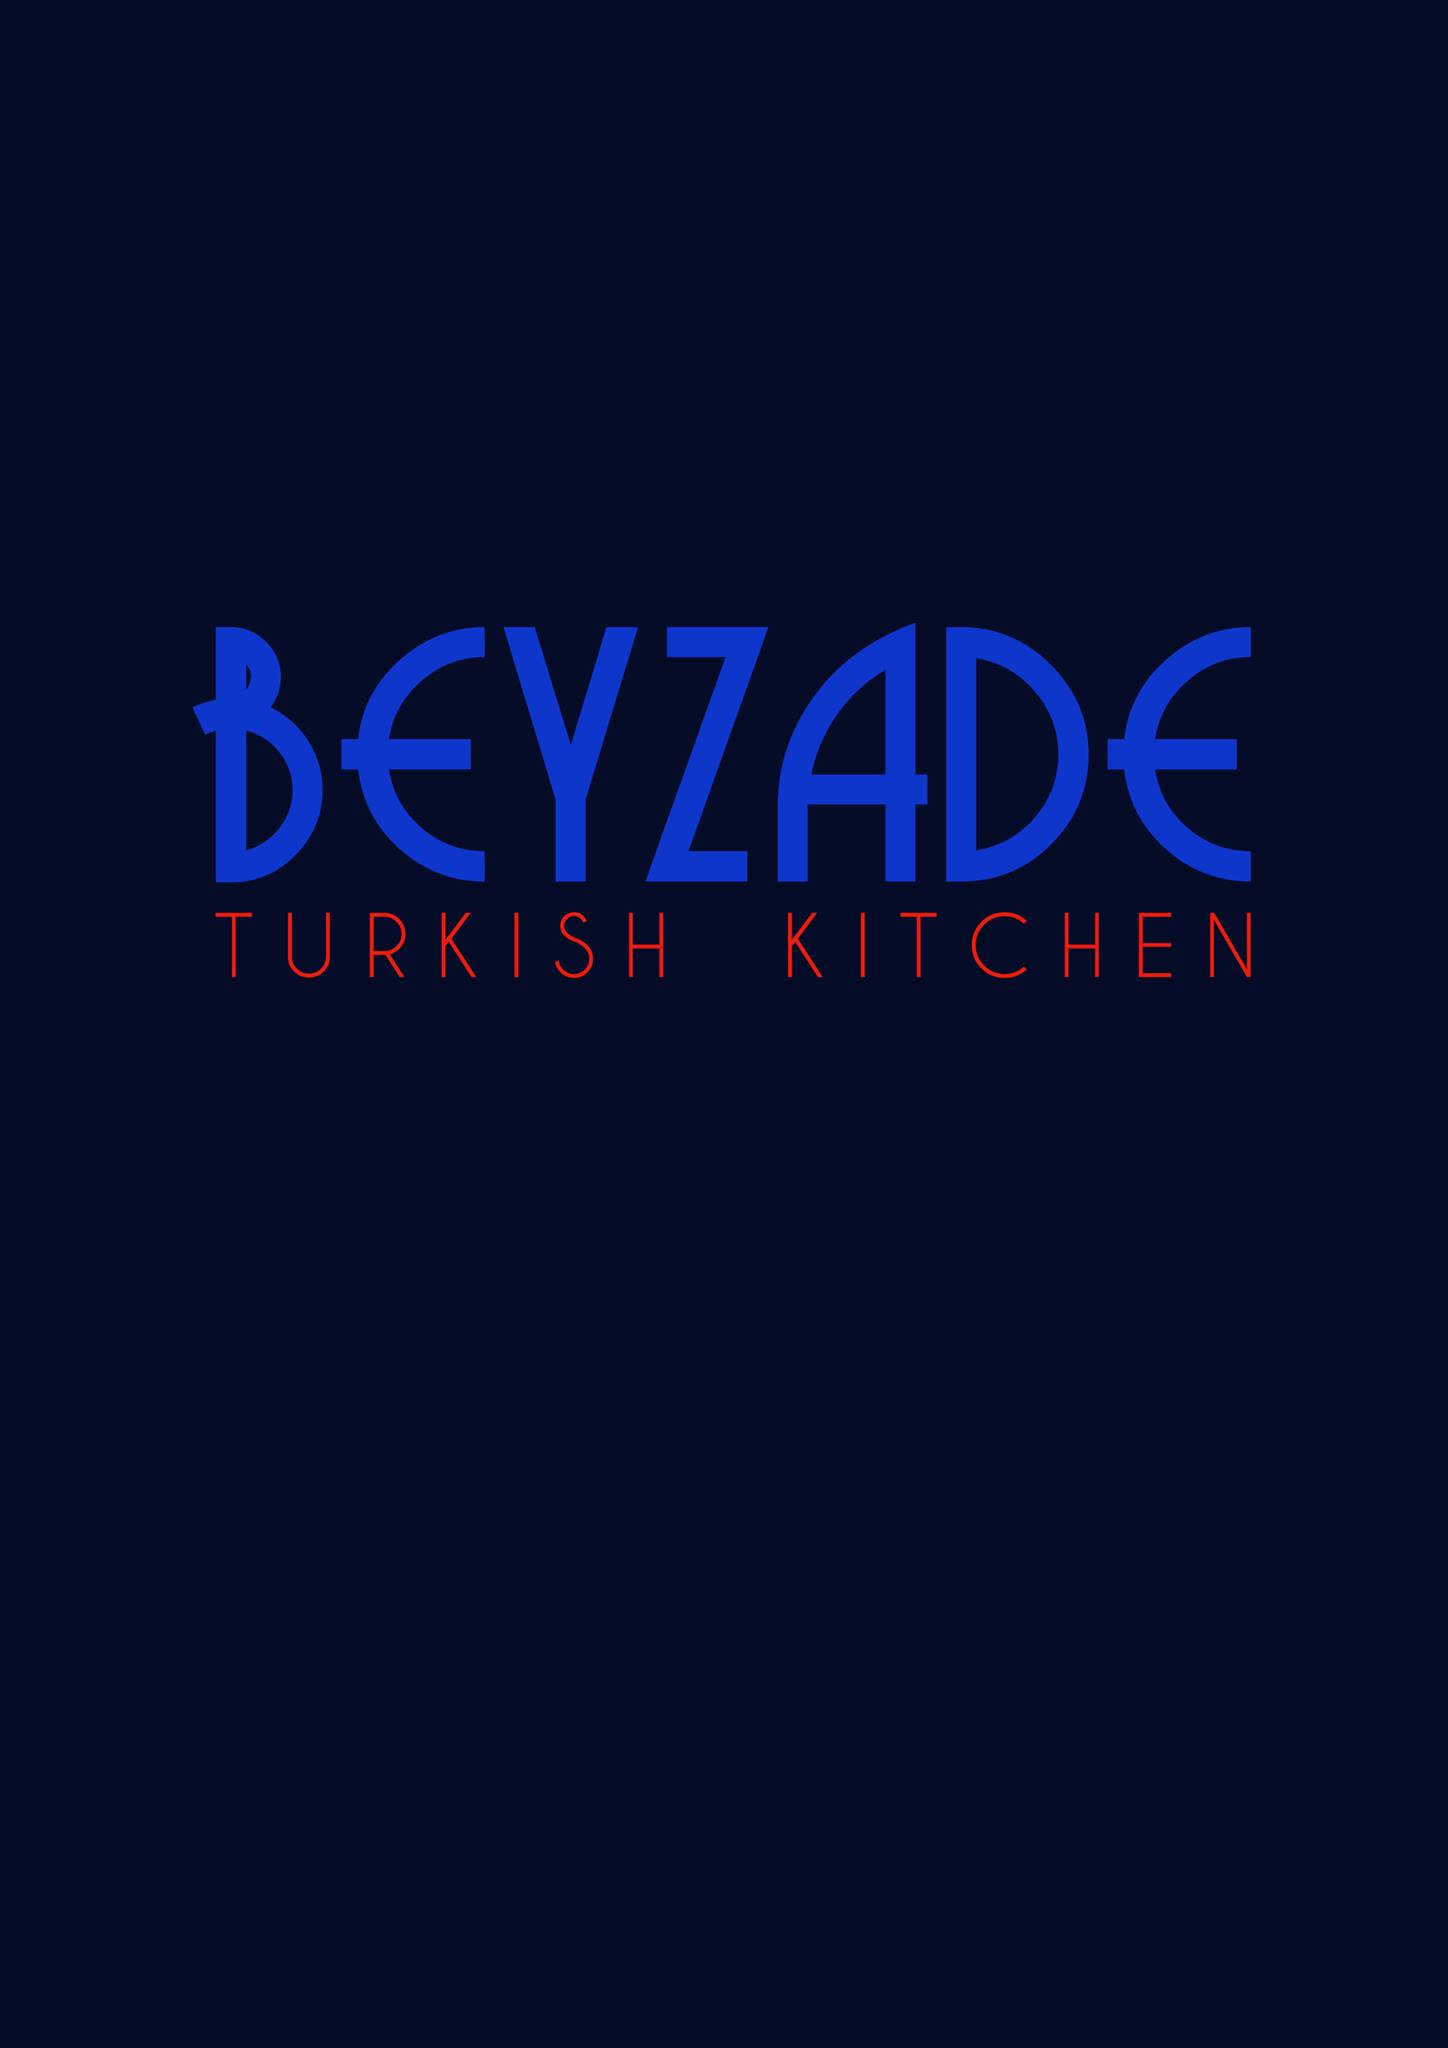 Beyzade Turkish Kitchen